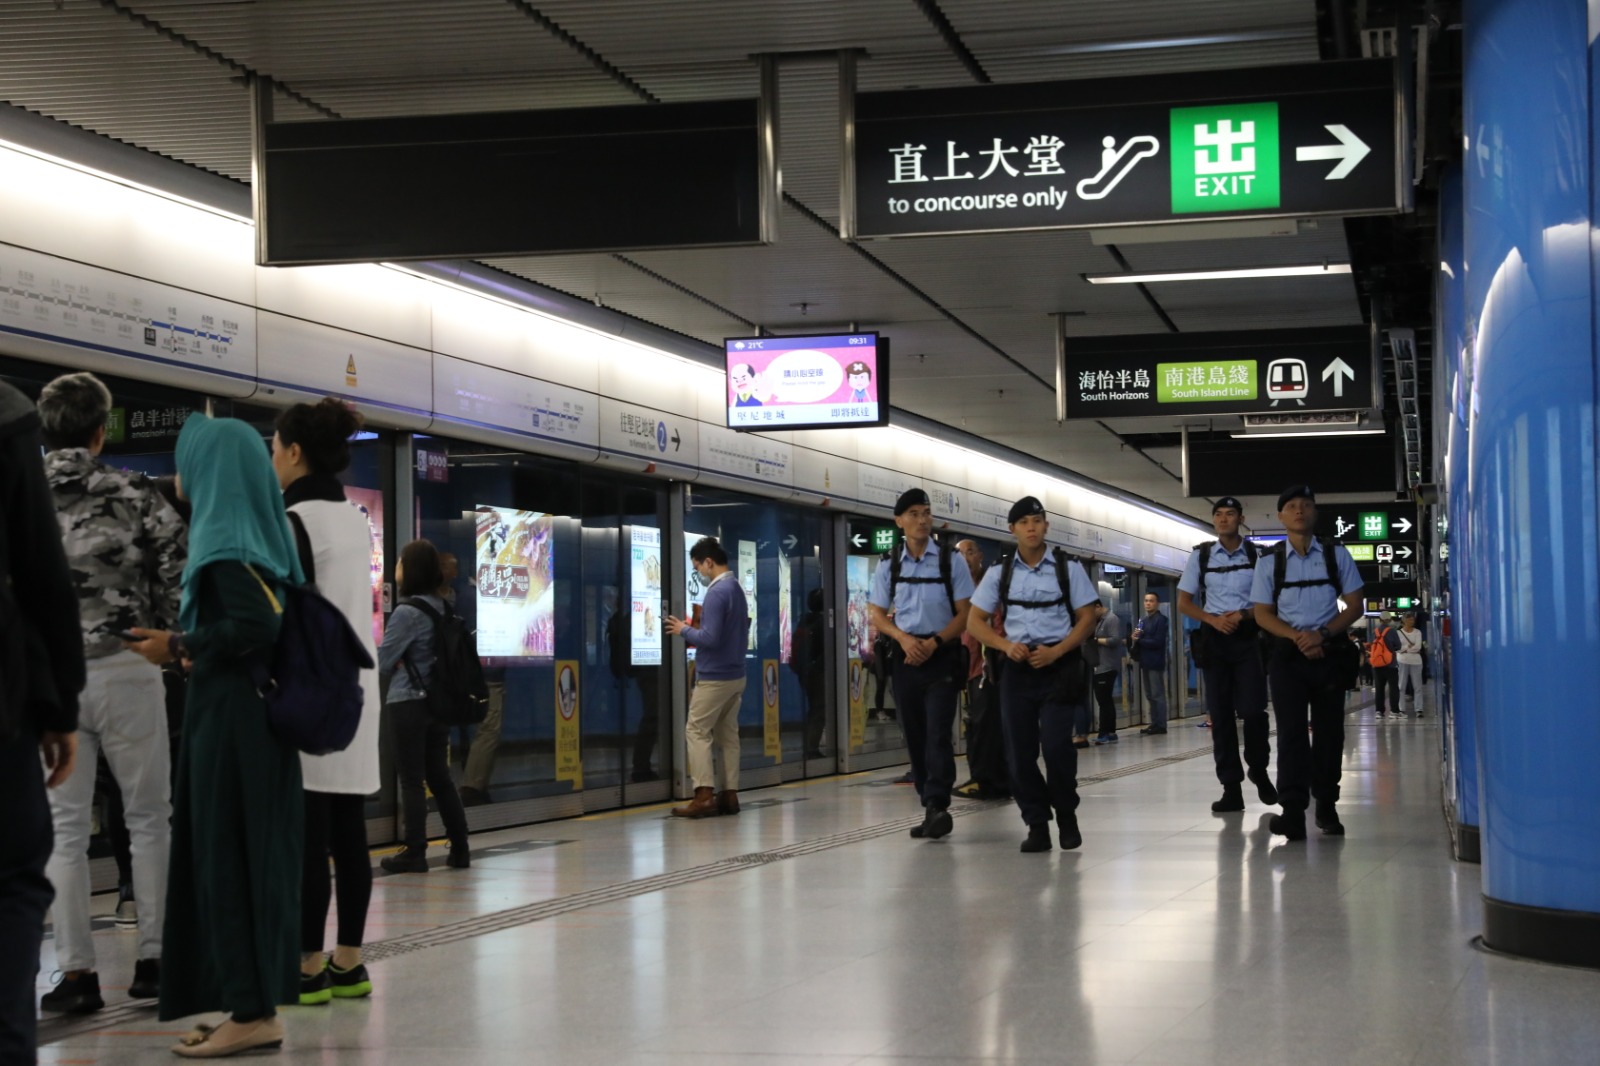 香港警隊工作範疇包括維護國家安全，以及維持治安、公共秩序及安全等。